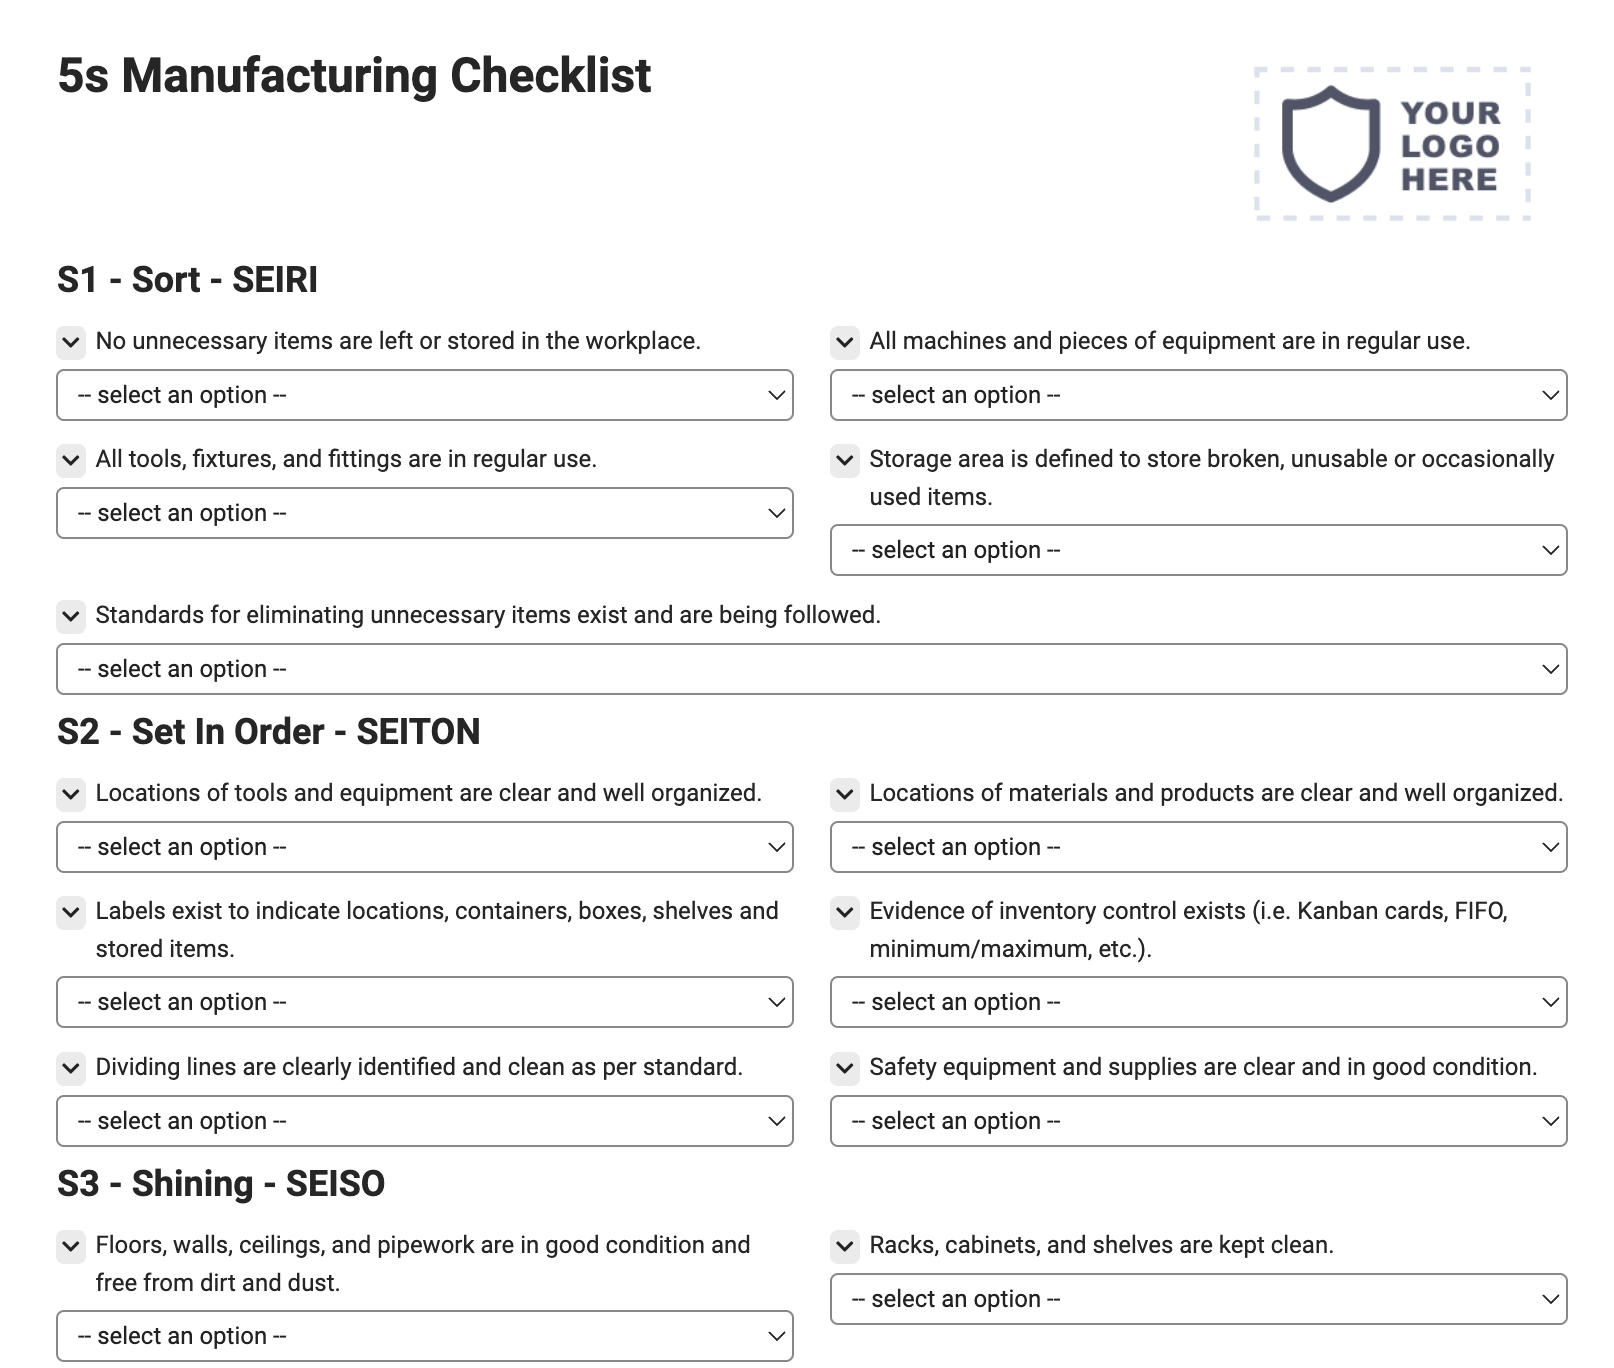 5s Manufacturing Checklist